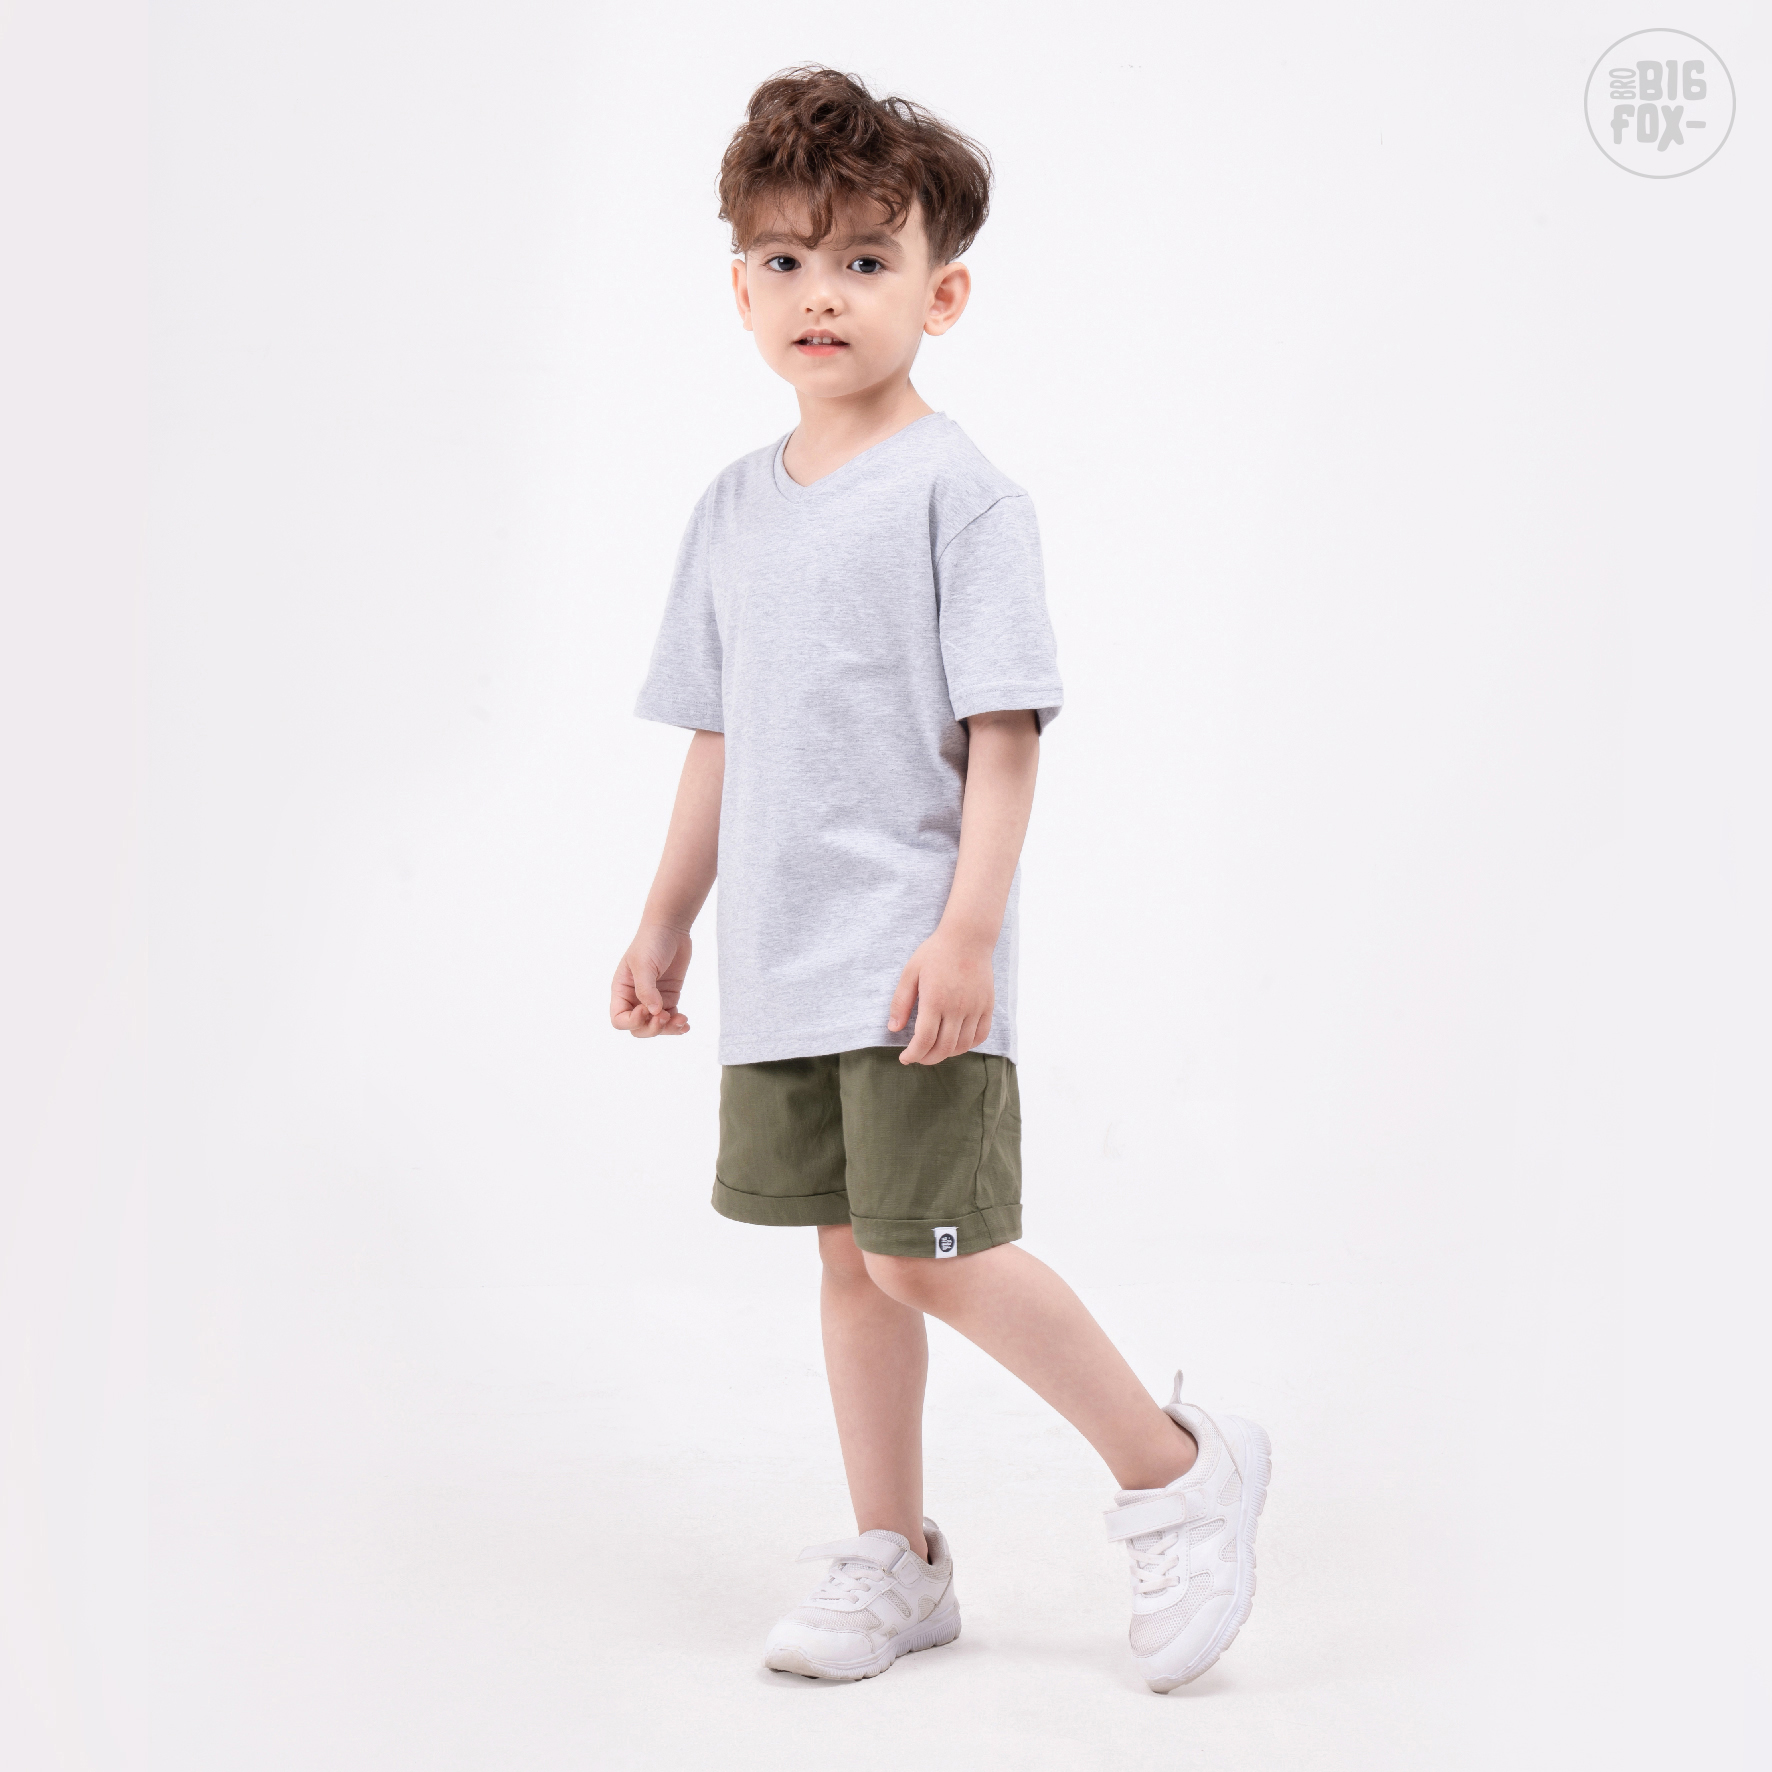 Áo bé trai BIGFOX - MISS MEOW size đại, áo phông cho bé cổ tim chất cotton từ 3 - 11 tuổi 11 - 40 kg